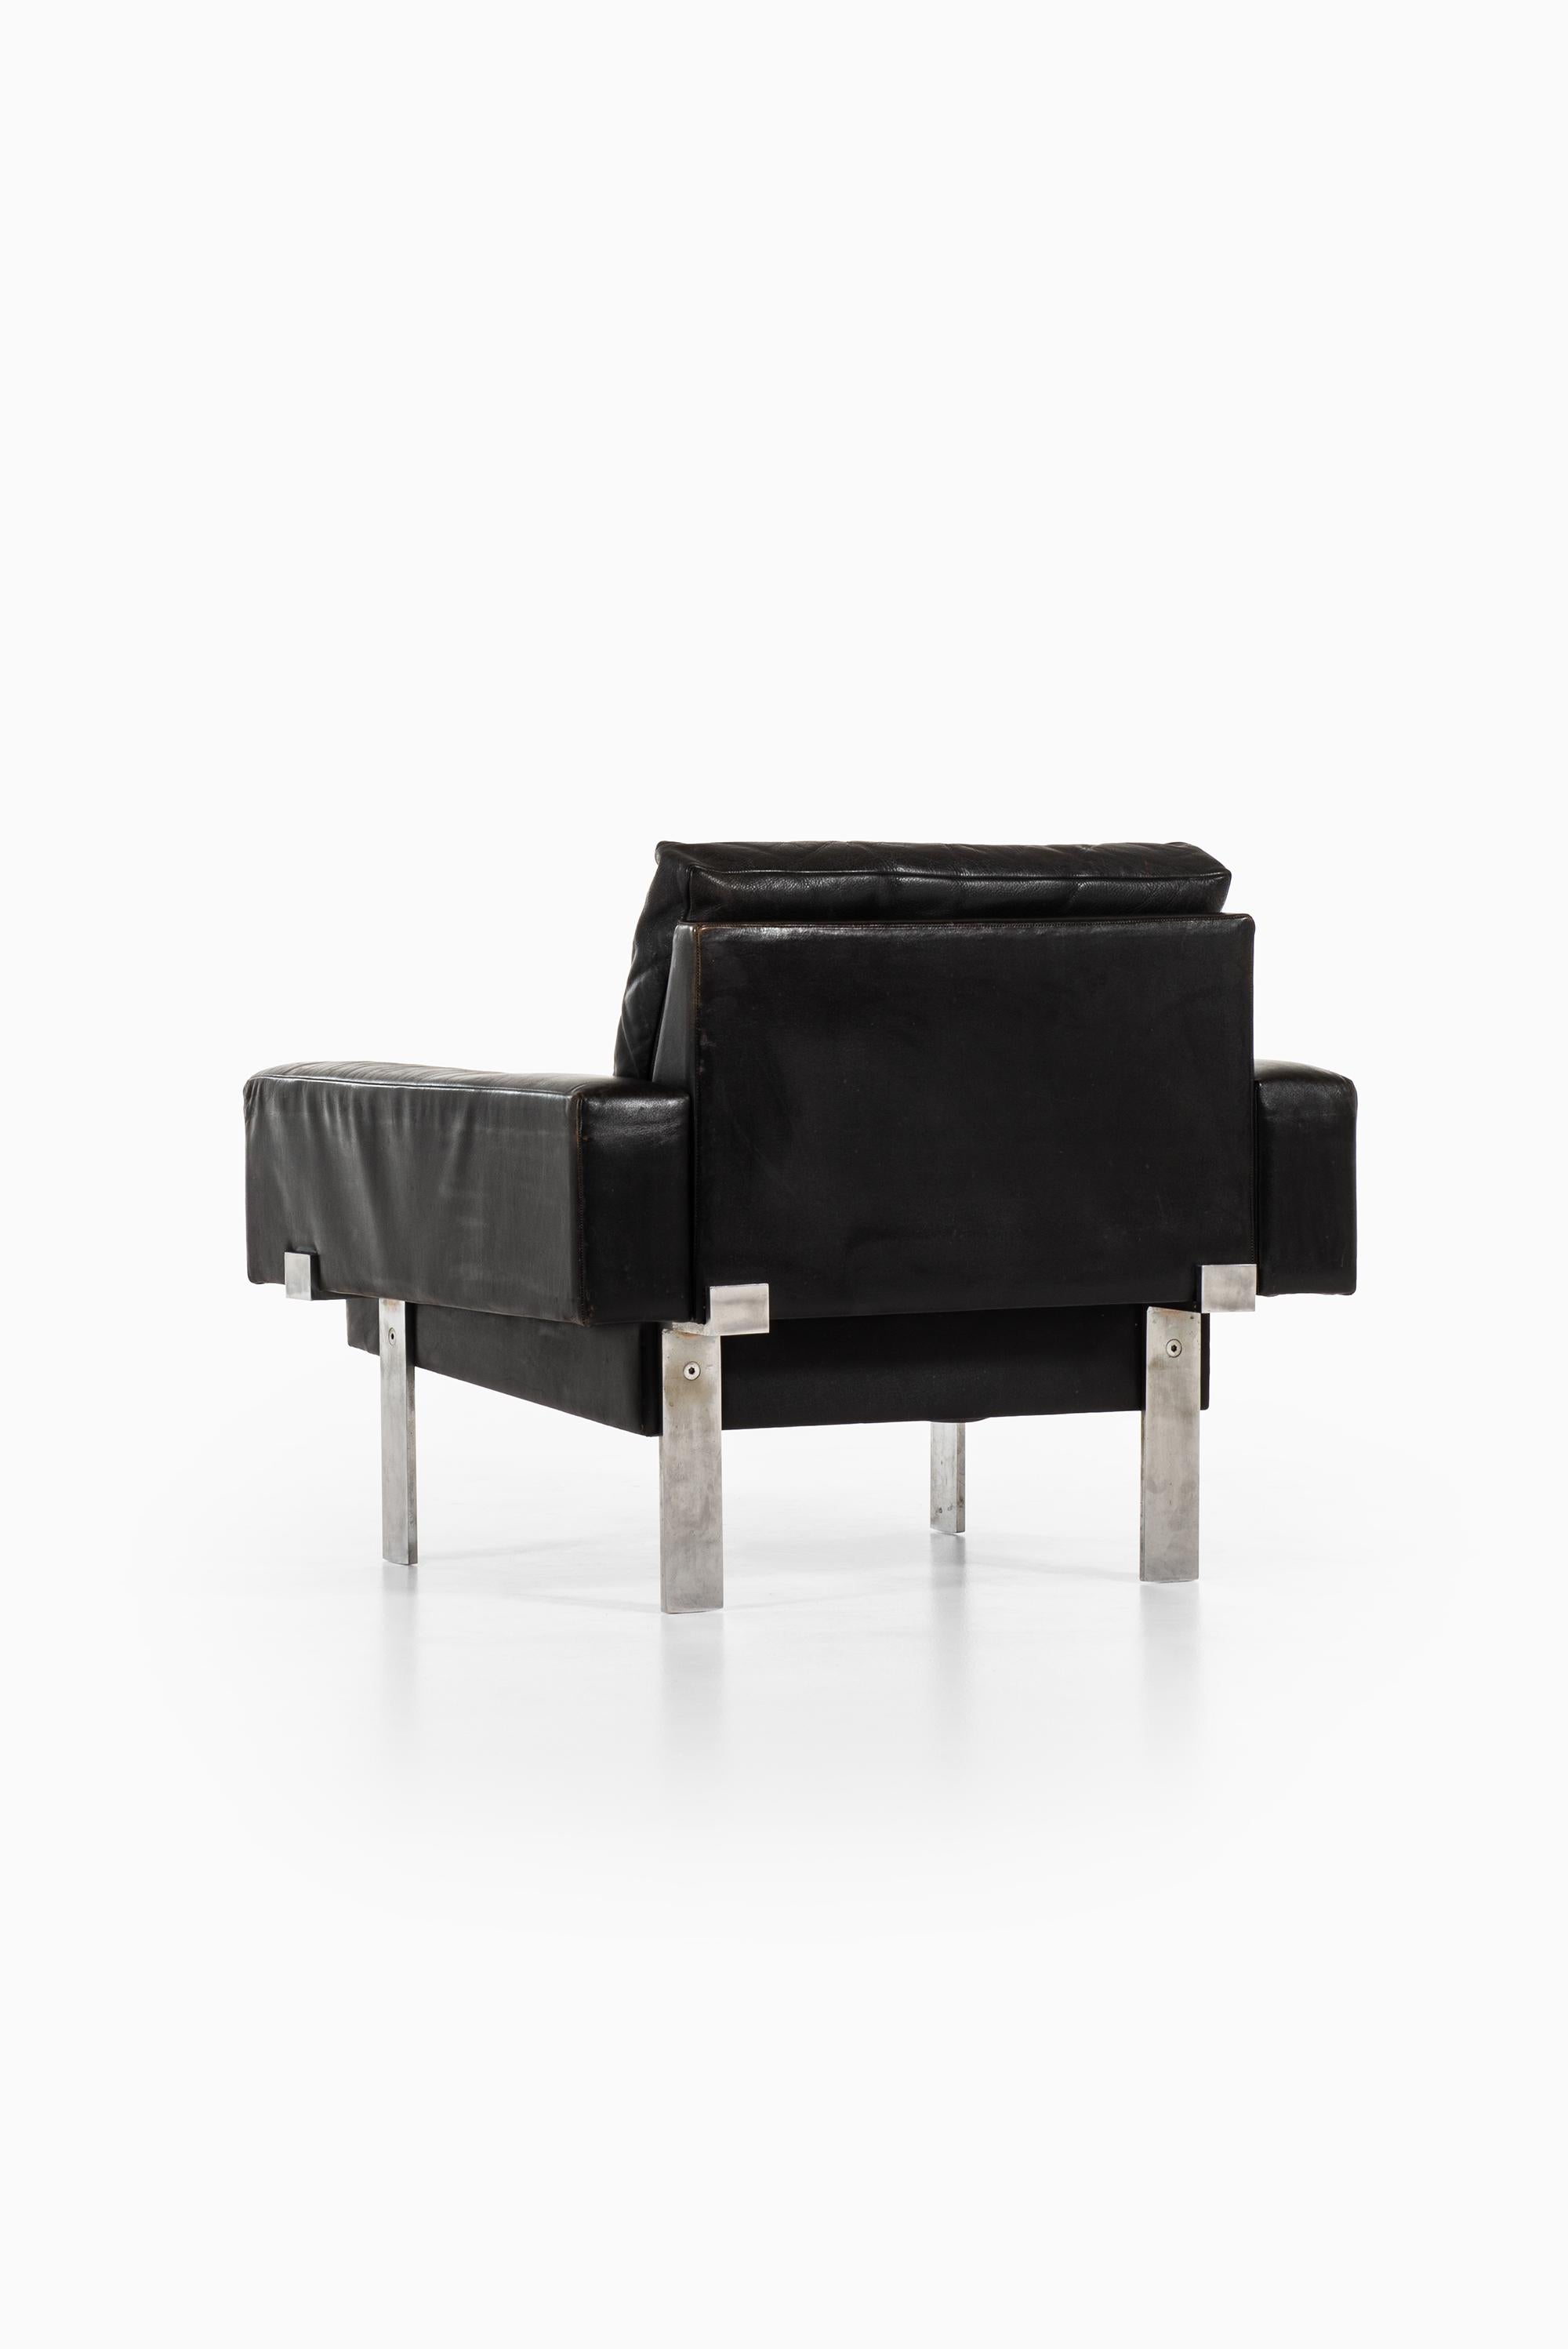 Illum Wikkelsø Easy Chair by Michael Laursen in Denmark For Sale 2